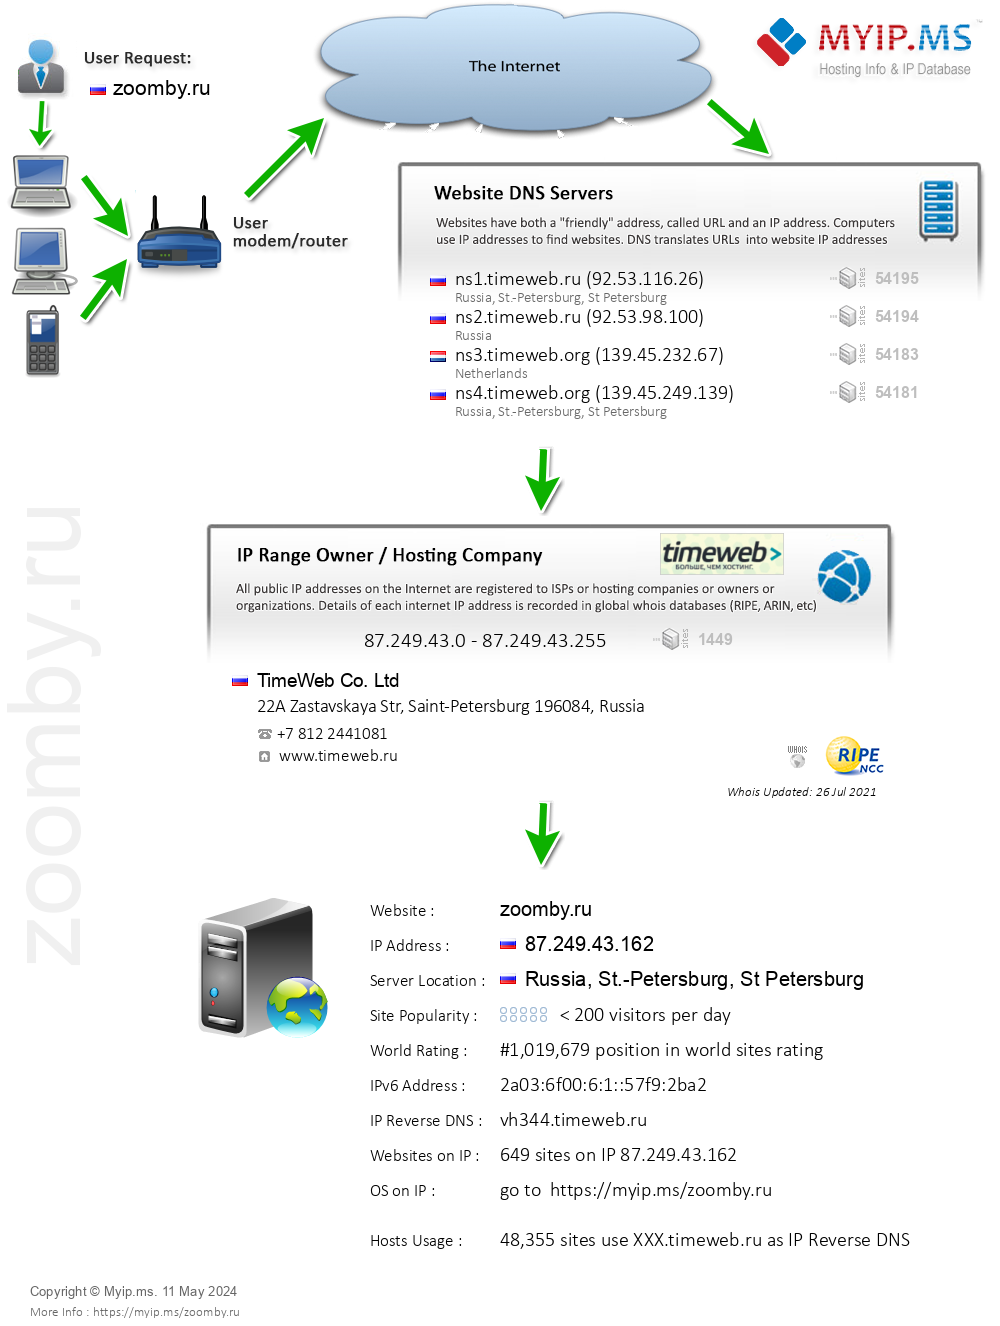 Zoomby.ru - Website Hosting Visual IP Diagram